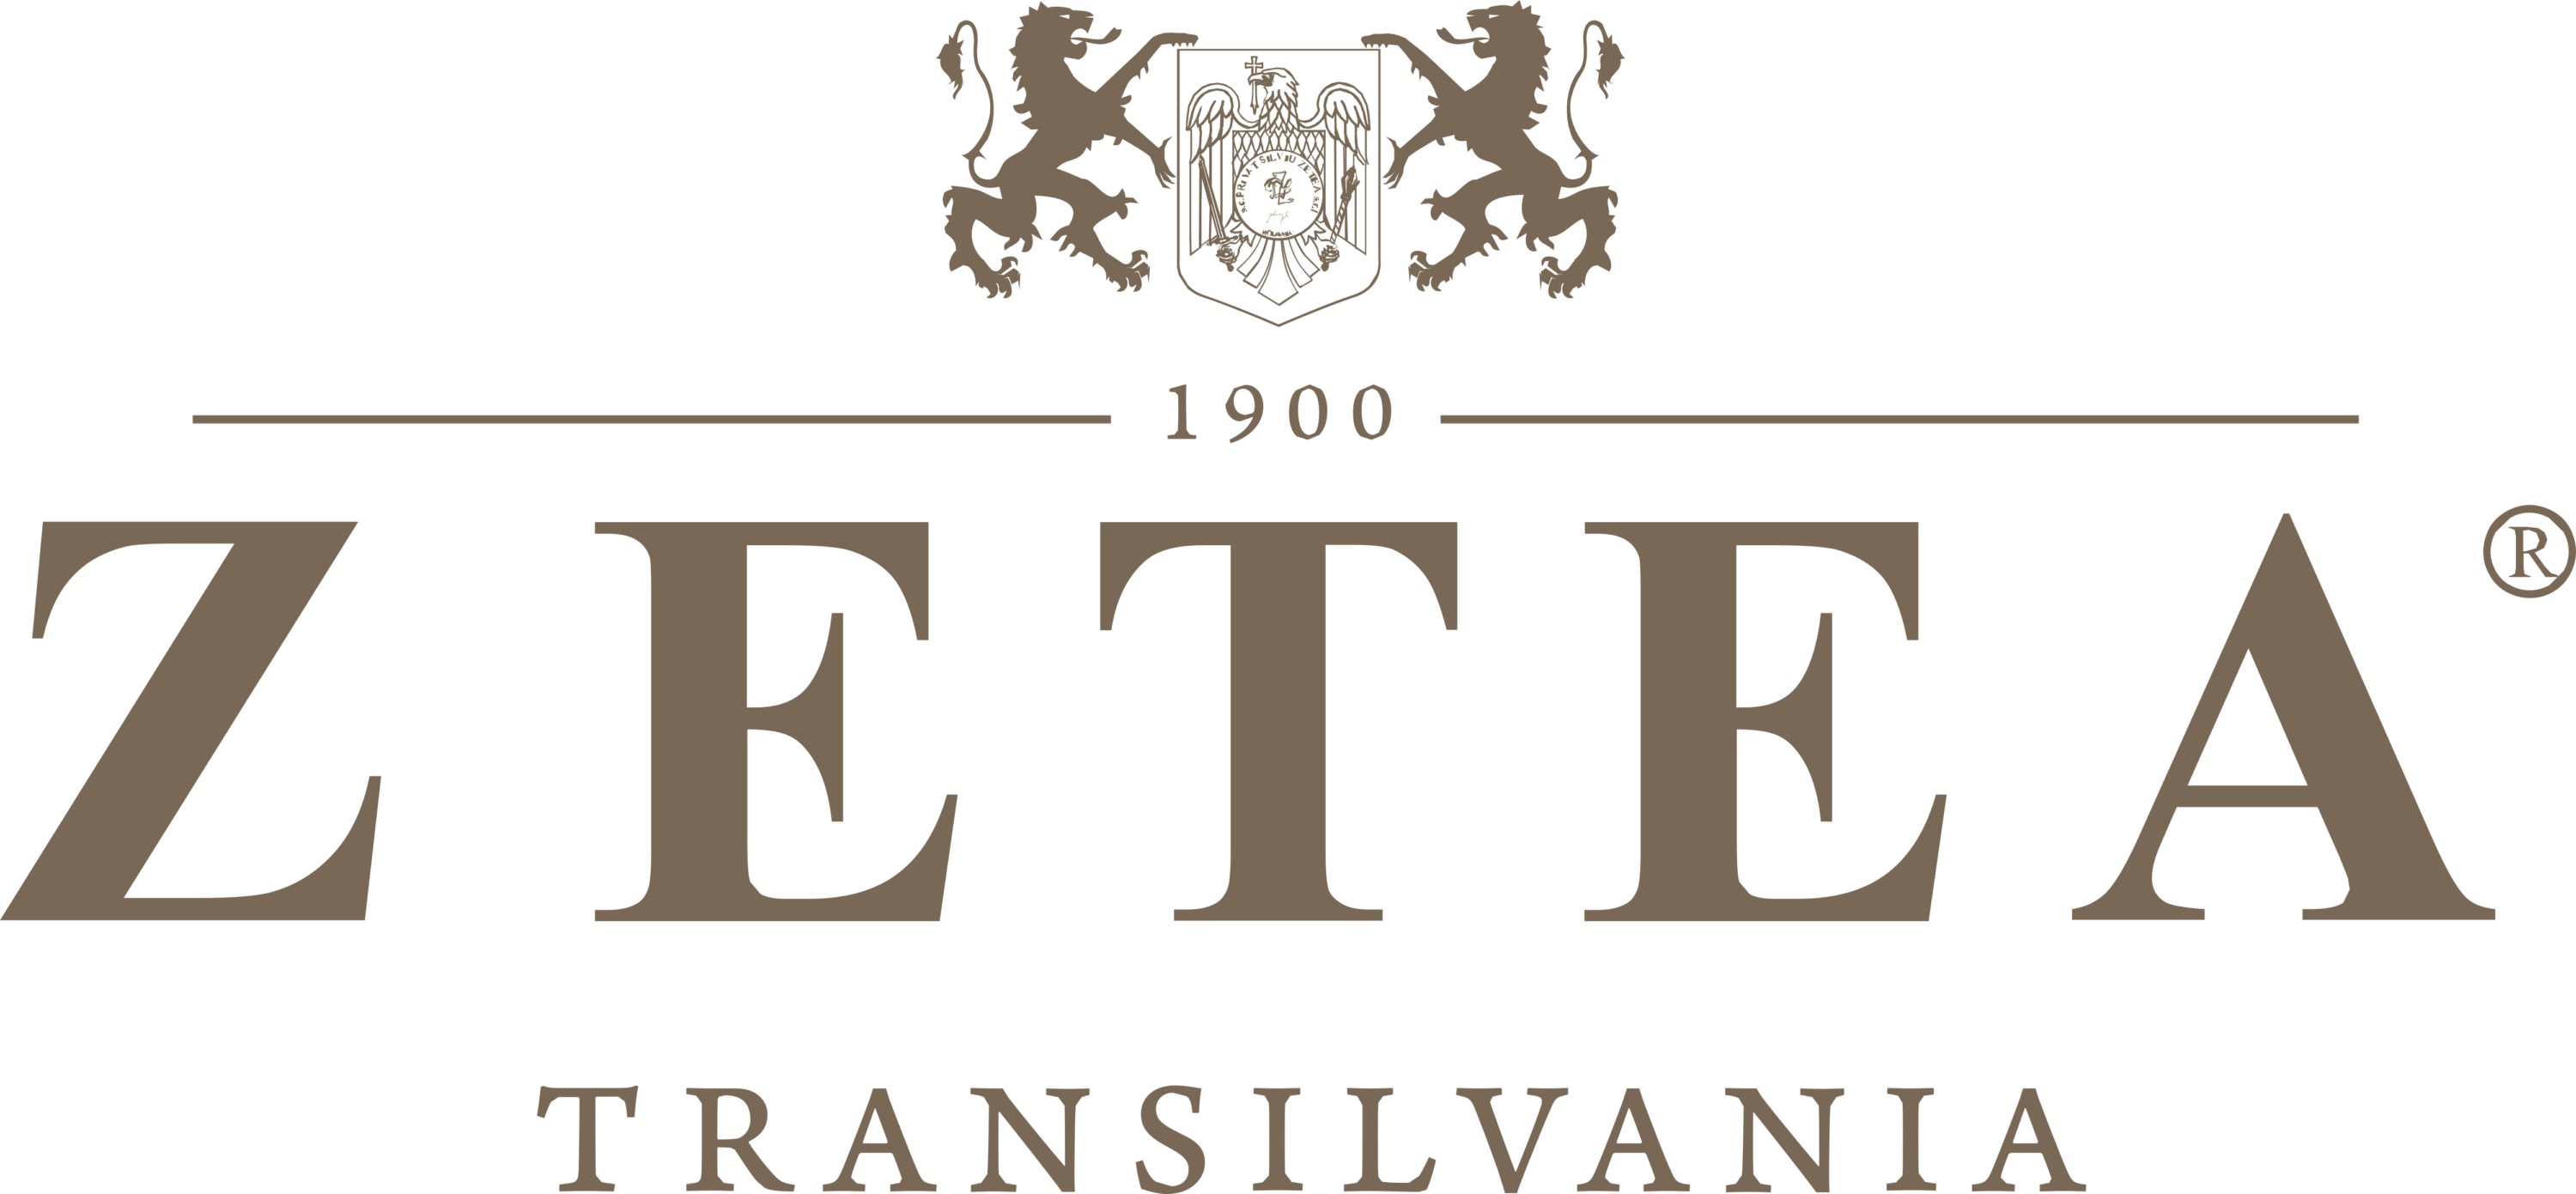 Zetea Logo